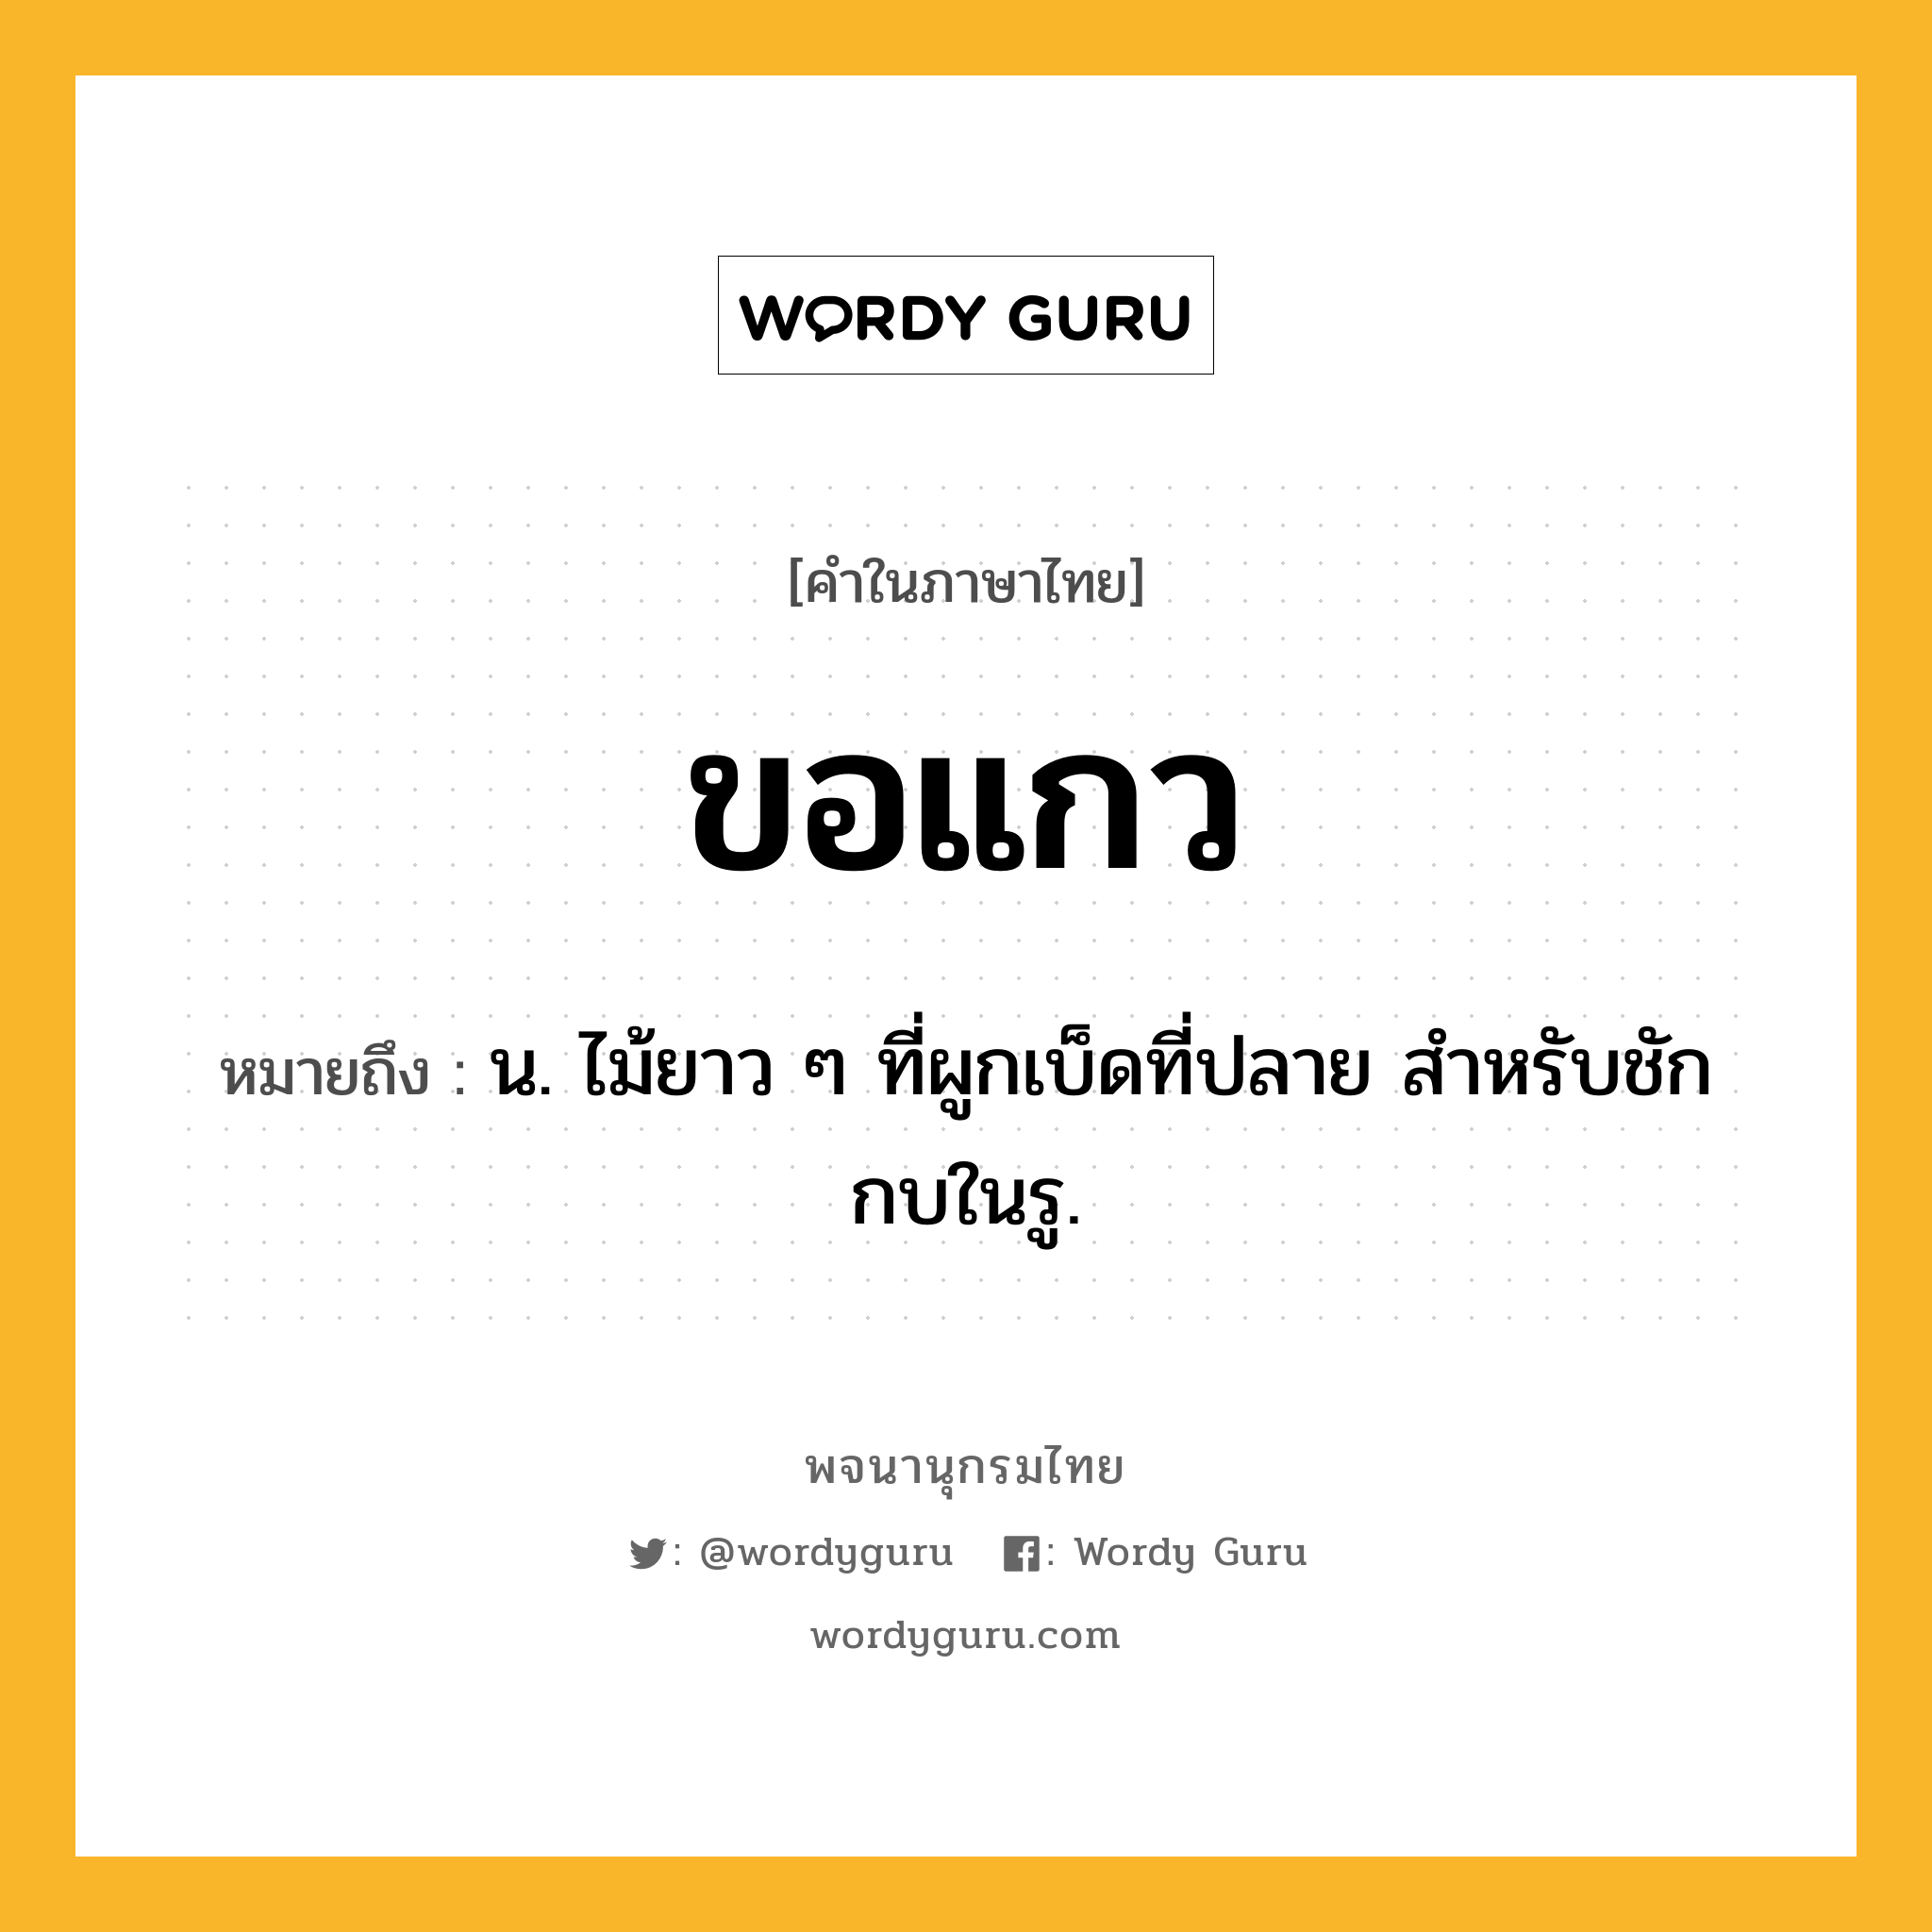 ขอแกว ความหมาย หมายถึงอะไร?, คำในภาษาไทย ขอแกว หมายถึง น. ไม้ยาว ๆ ที่ผูกเบ็ดที่ปลาย สําหรับชักกบในรู.